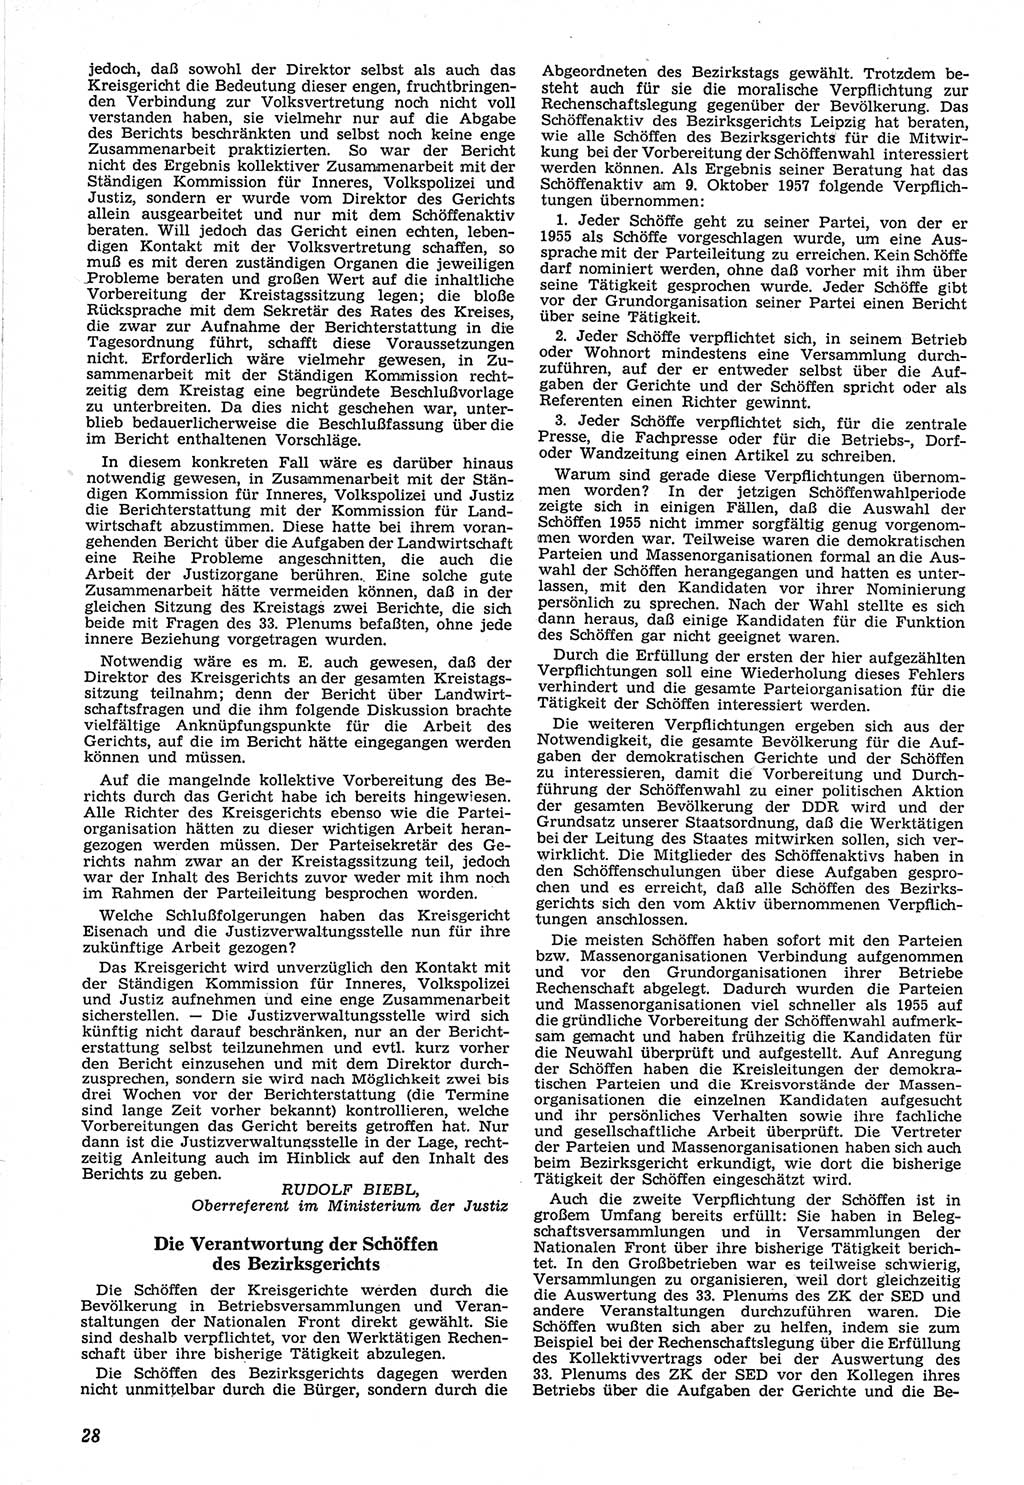 Neue Justiz (NJ), Zeitschrift für Recht und Rechtswissenschaft [Deutsche Demokratische Republik (DDR)], 12. Jahrgang 1958, Seite 28 (NJ DDR 1958, S. 28)